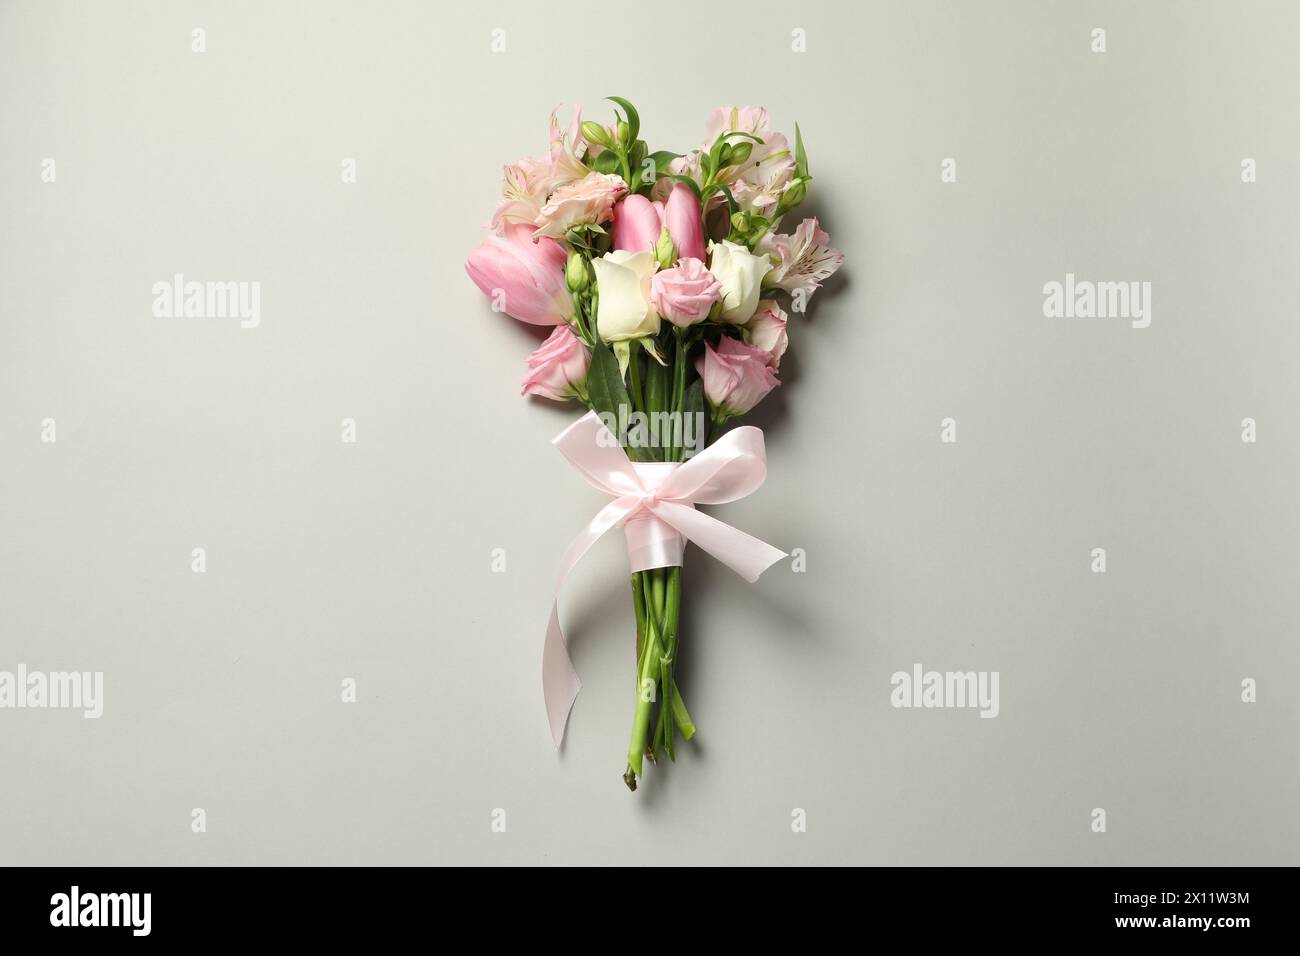 Bonne fête des mères. Bouquet de belles fleurs attachées avec ruban rose sur fond gris clair, vue de dessus Banque D'Images